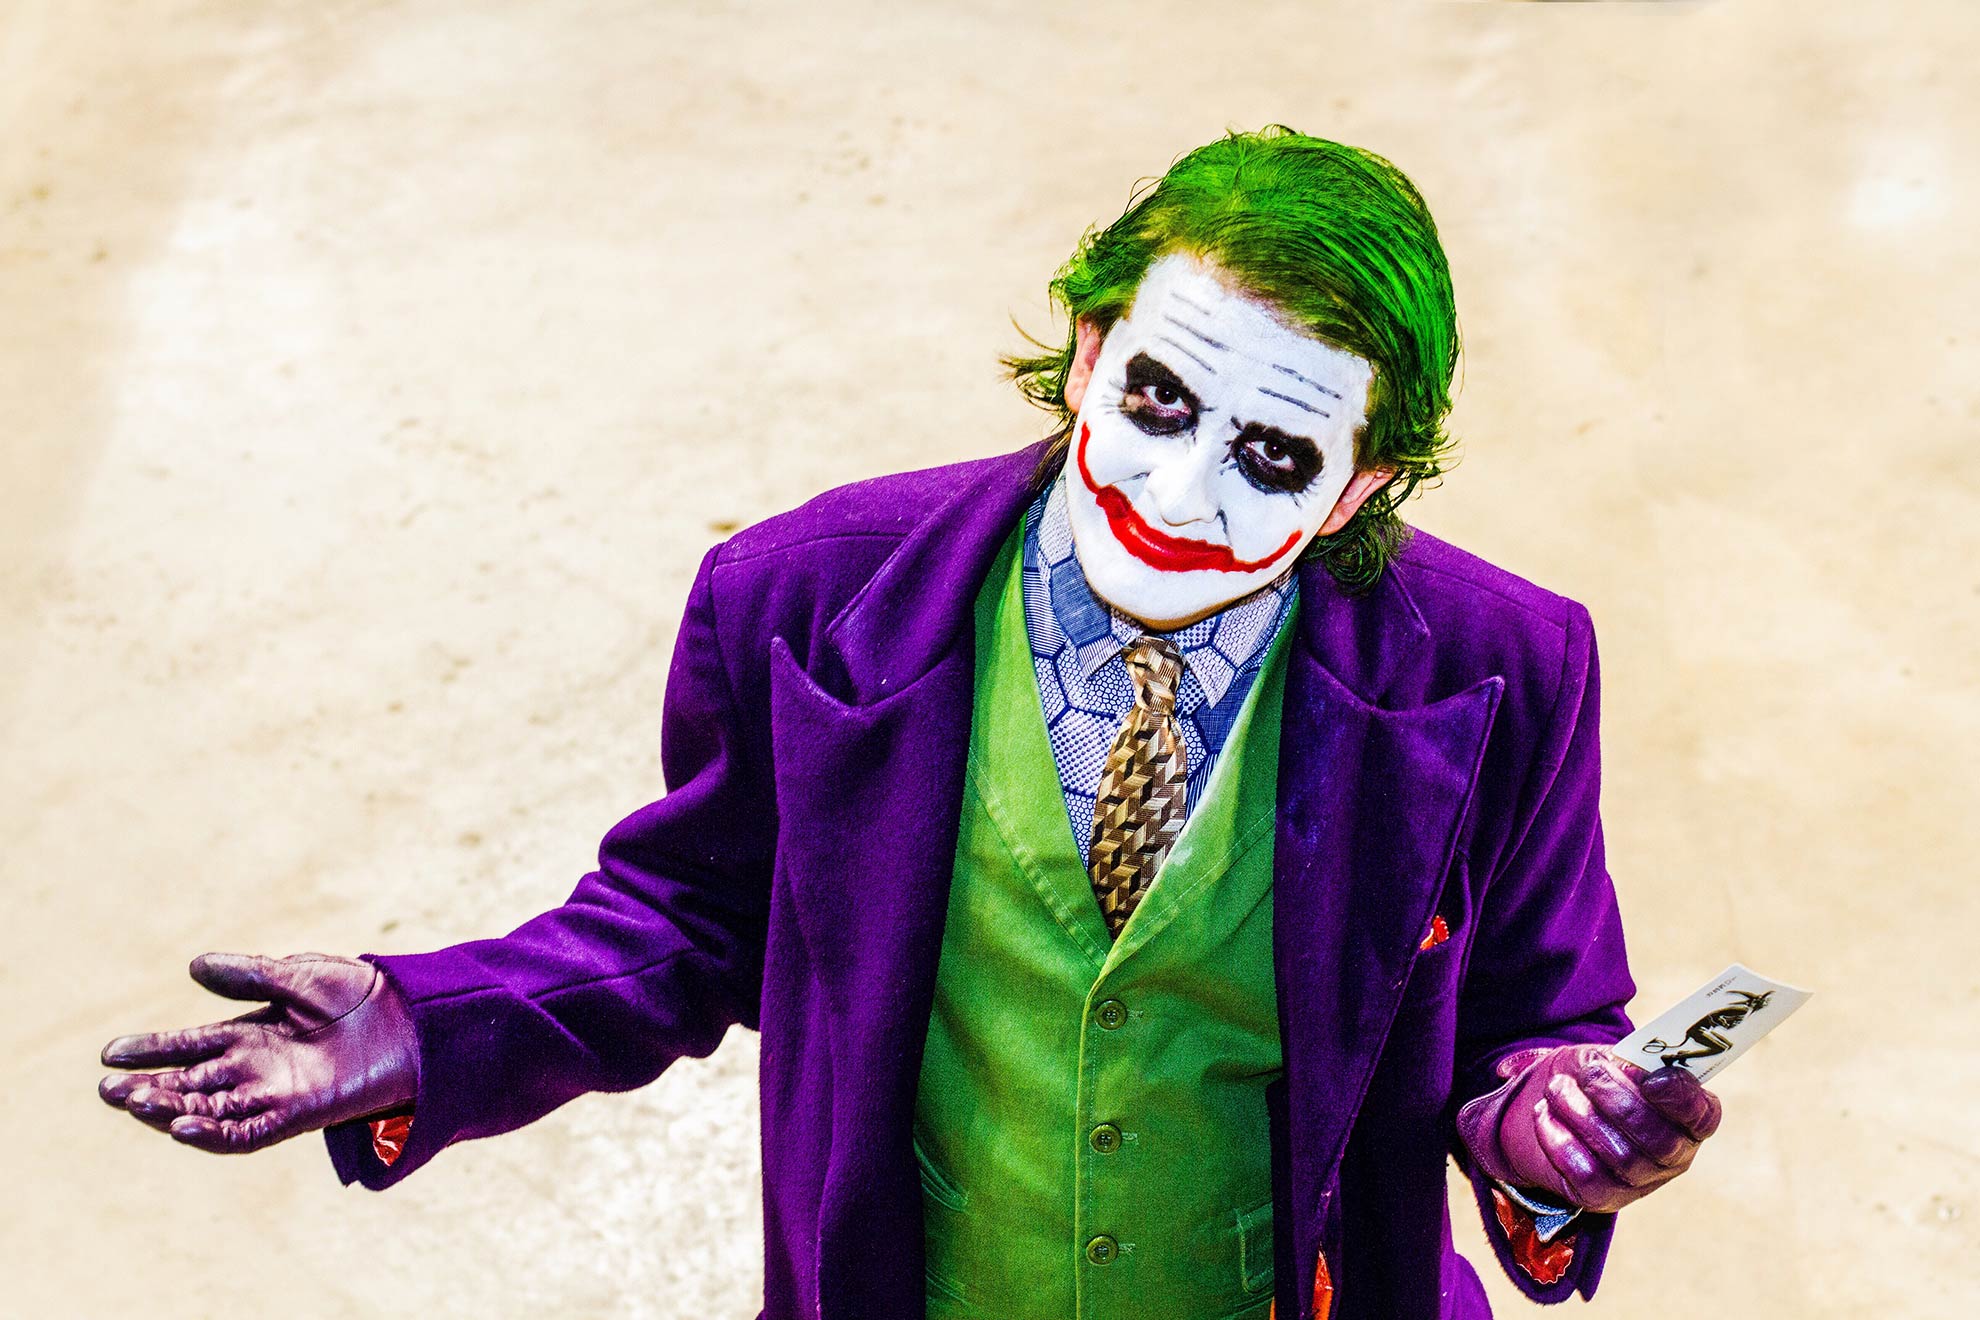 Cosplay Joker z Batmana, ilustracja do artykułu